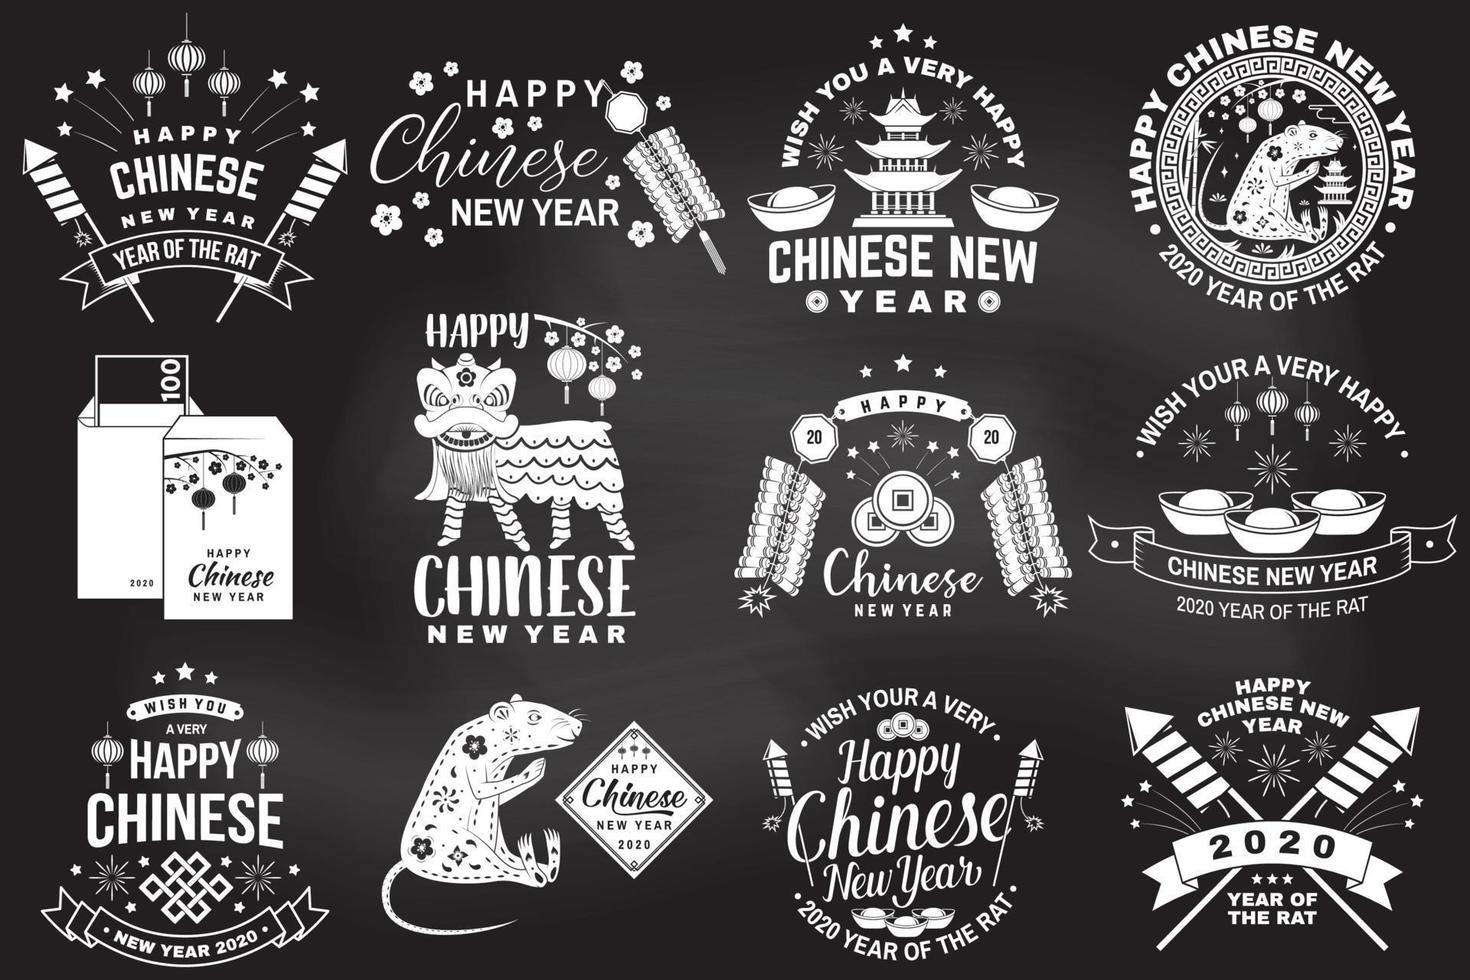 feliz año nuevo chino en la pizarra. postal clásica de felicitación de año nuevo chino. banner para plantilla de sitio web vector